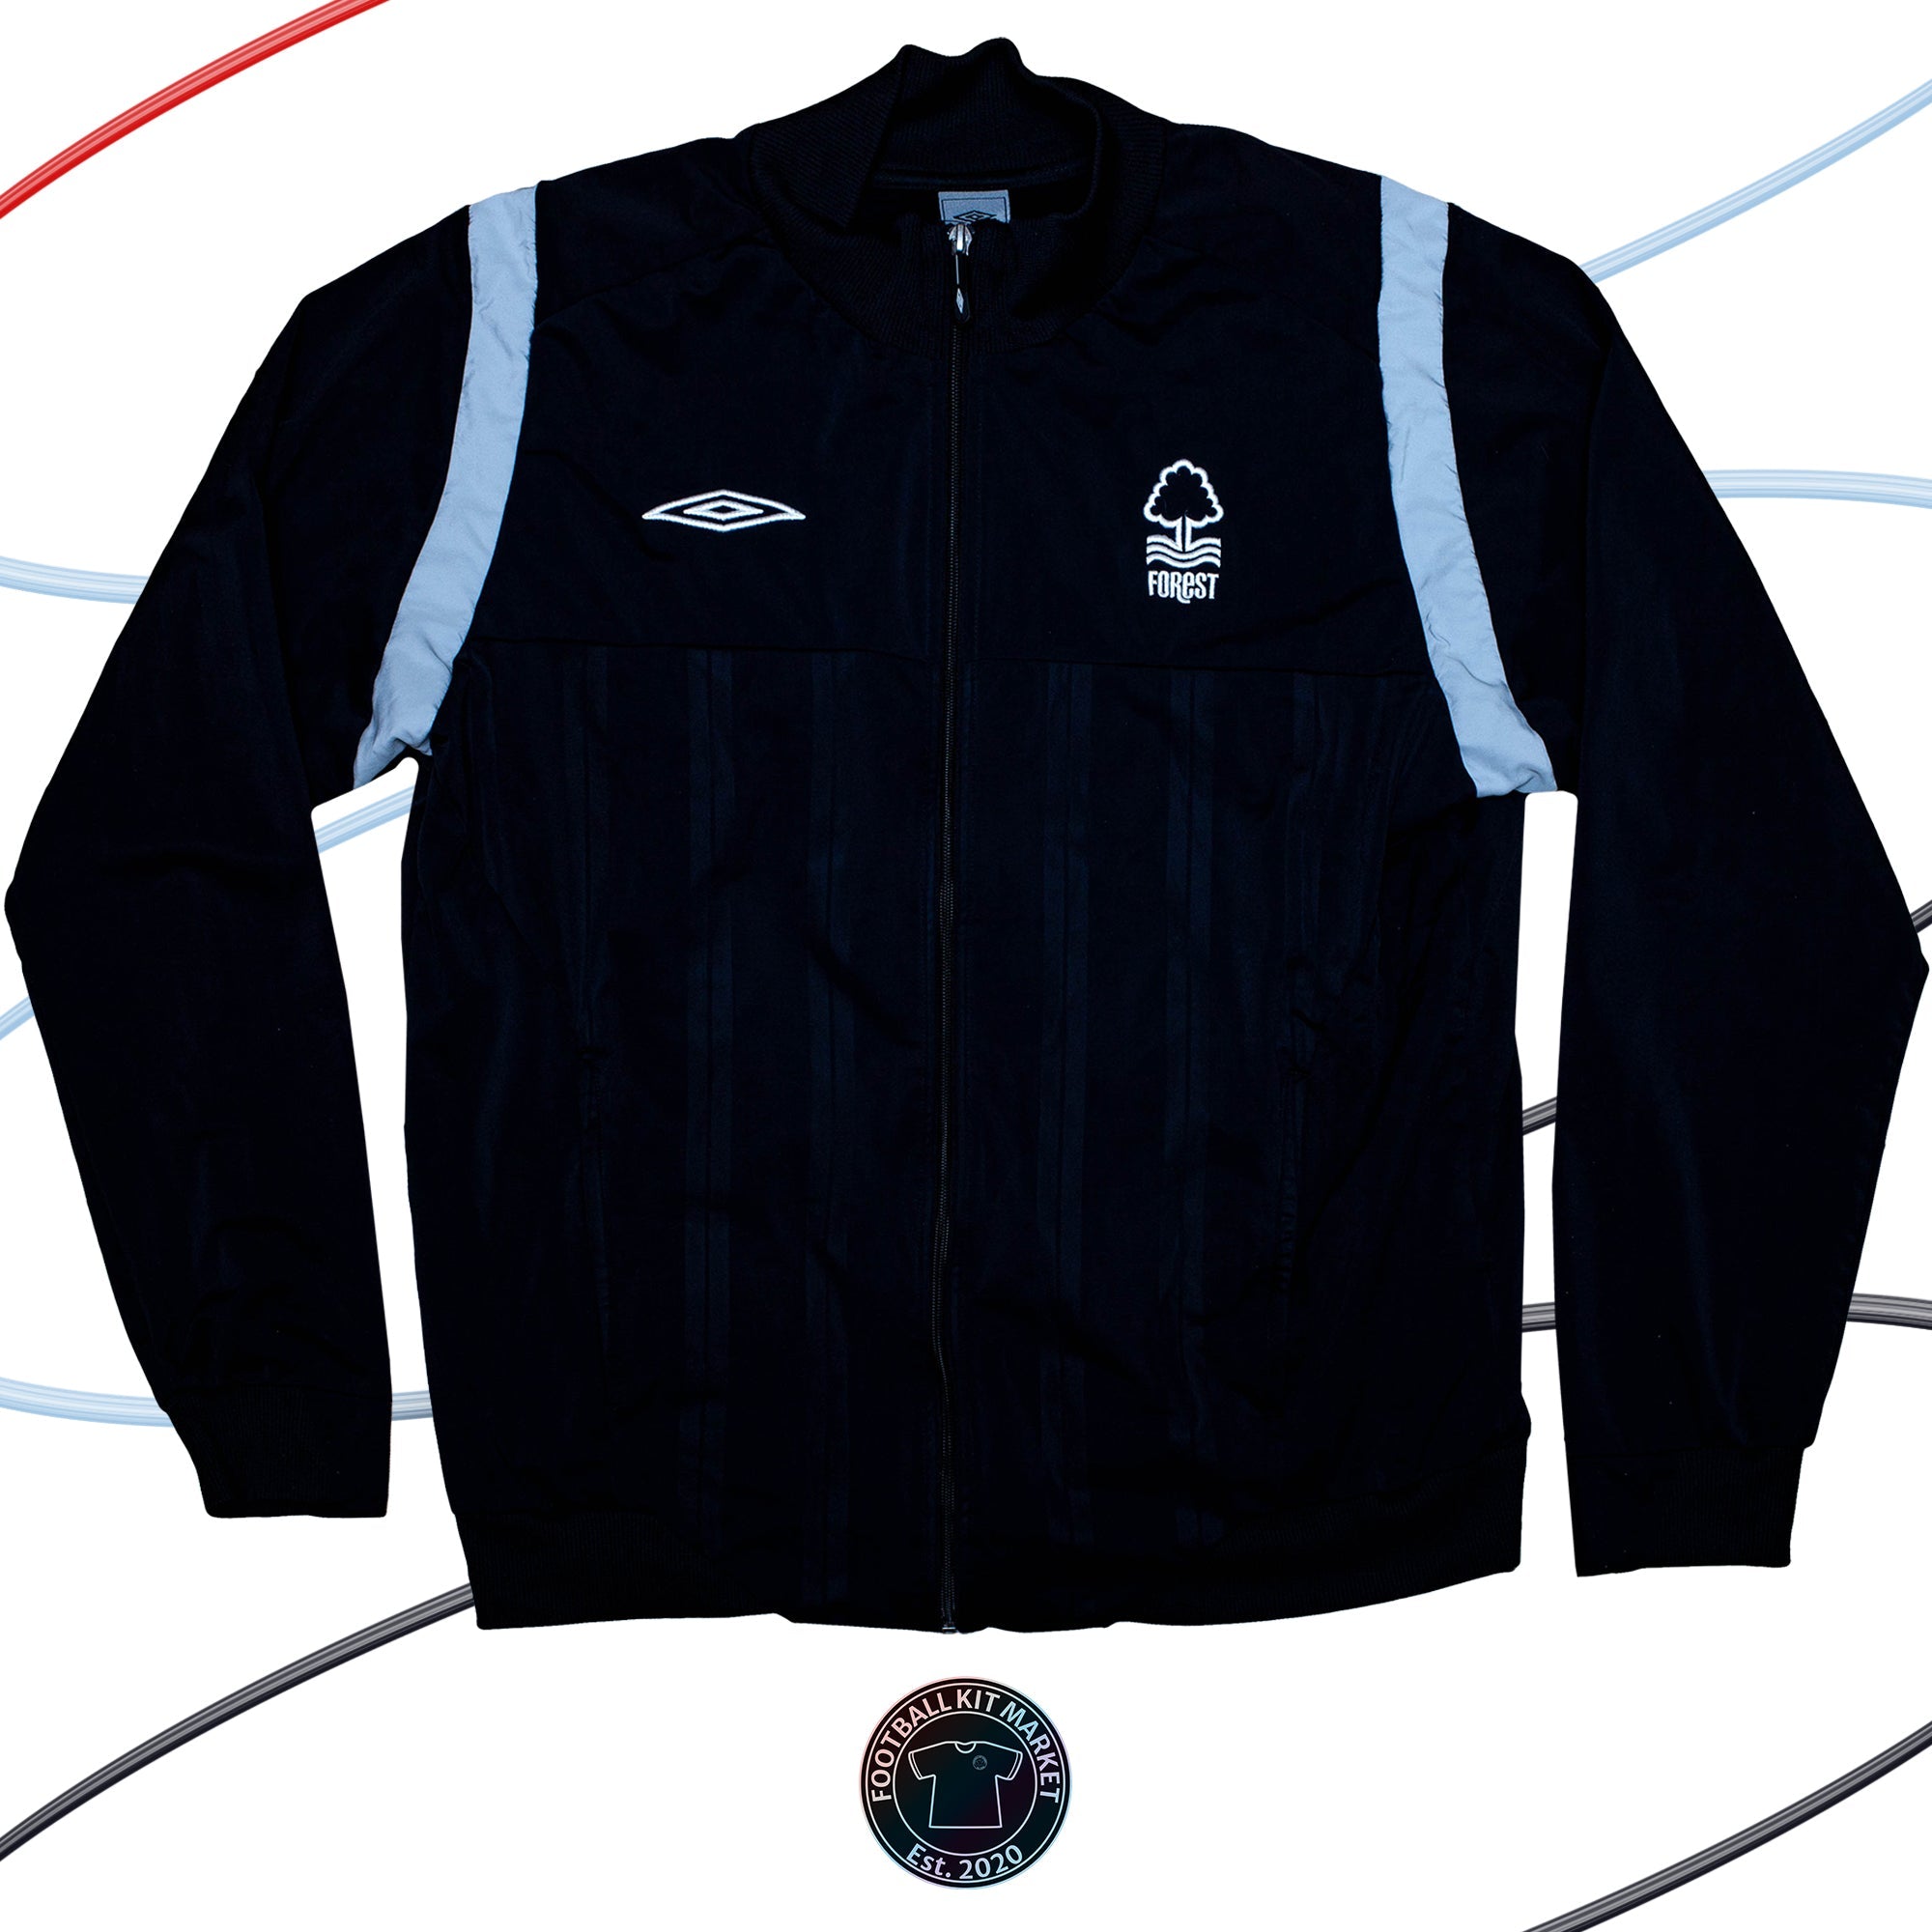 Genuine NOTTINGHAM FOREST Jacket (2009) - UMBRO (XL) - Product Image from Football Kit Market